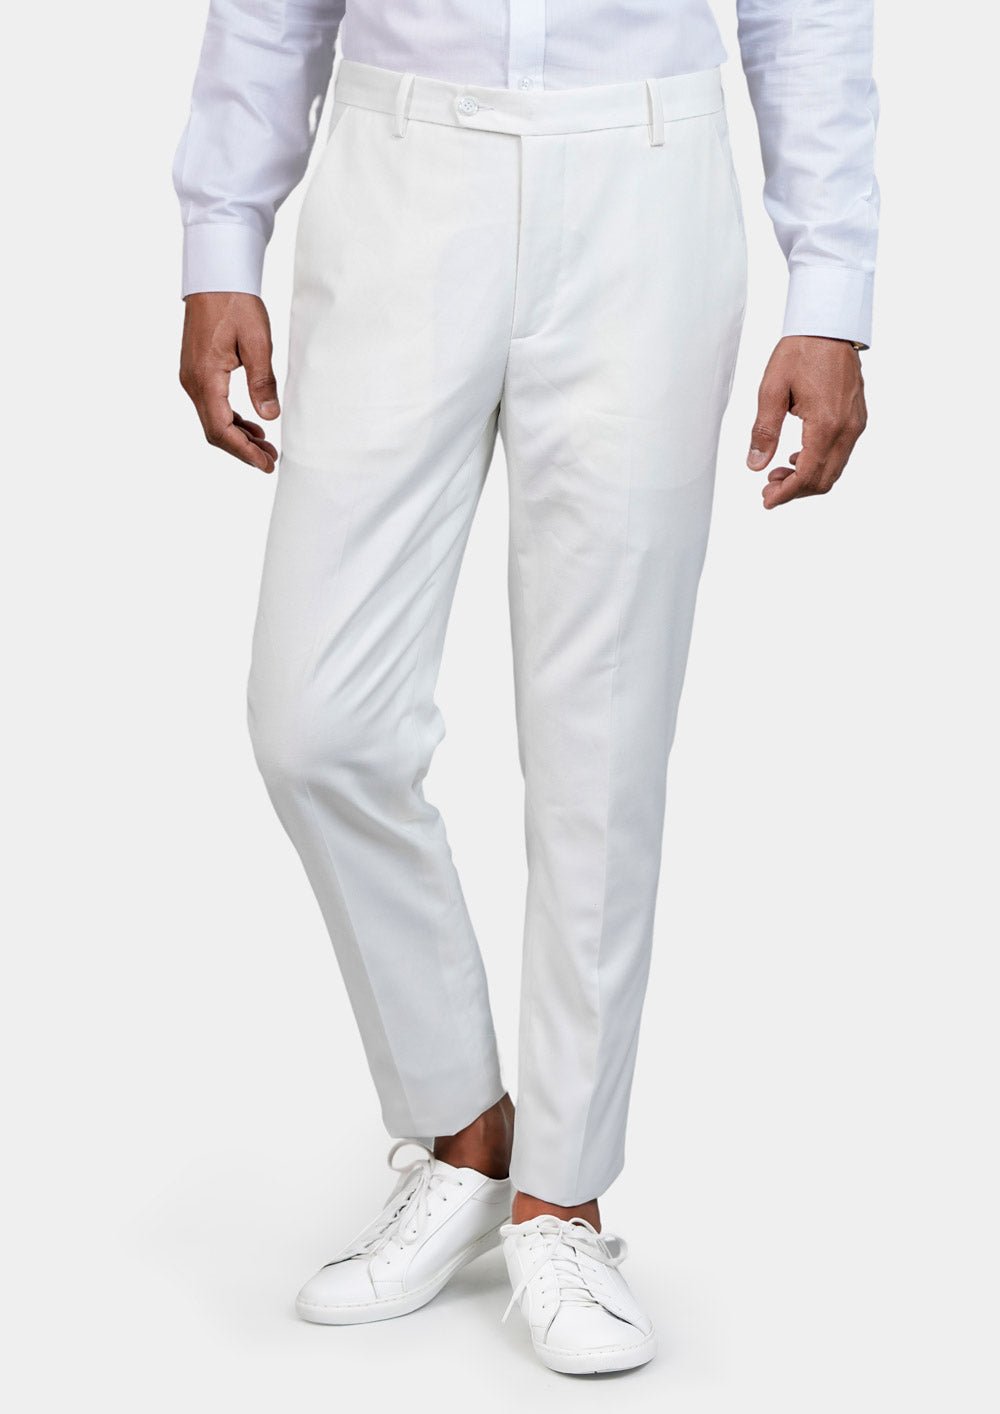 Bryant White Twill Suit - SARTORO